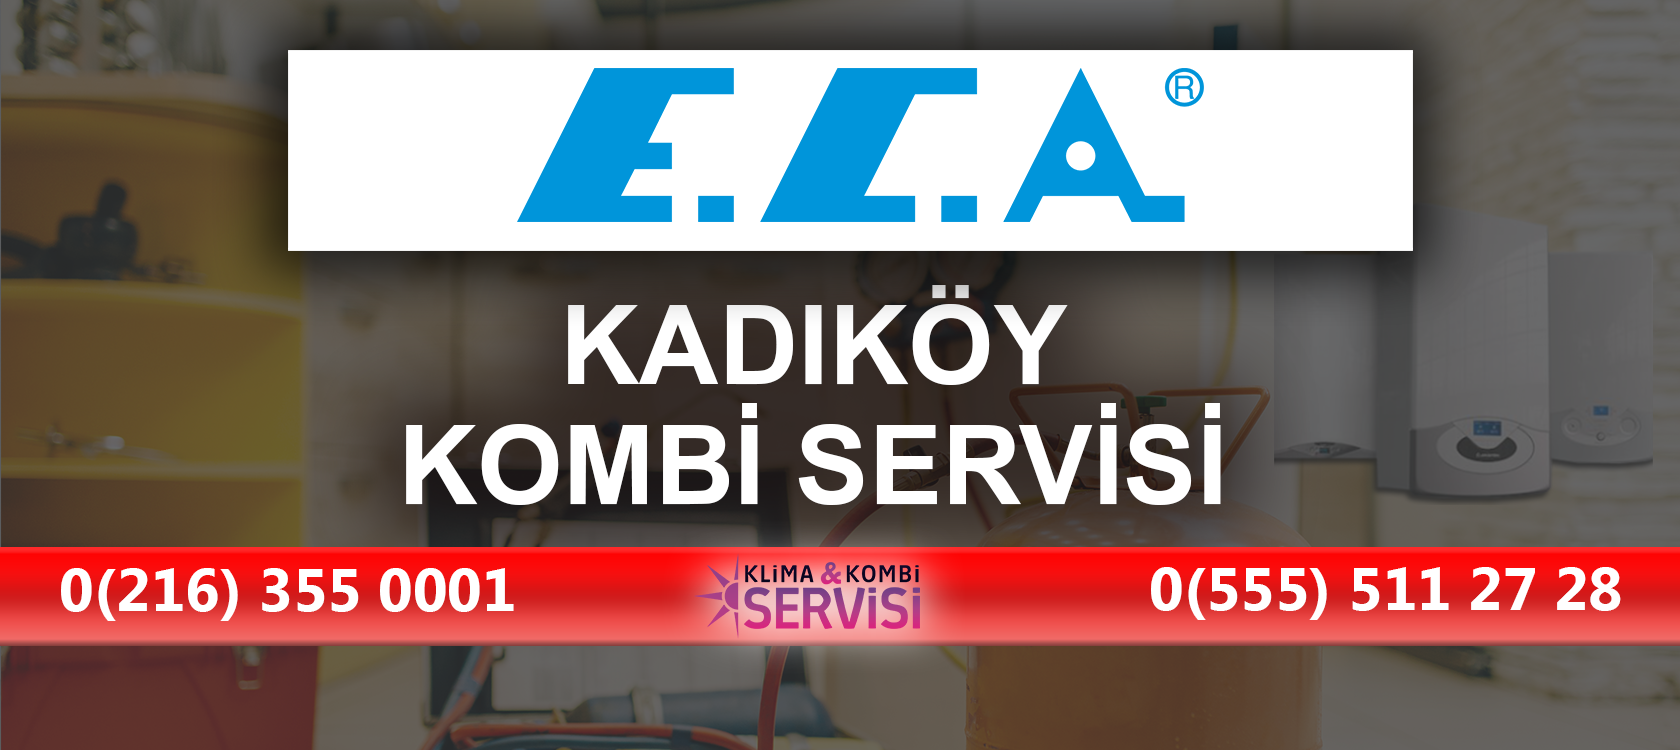 Kadikoy ECA Kombi Servisi